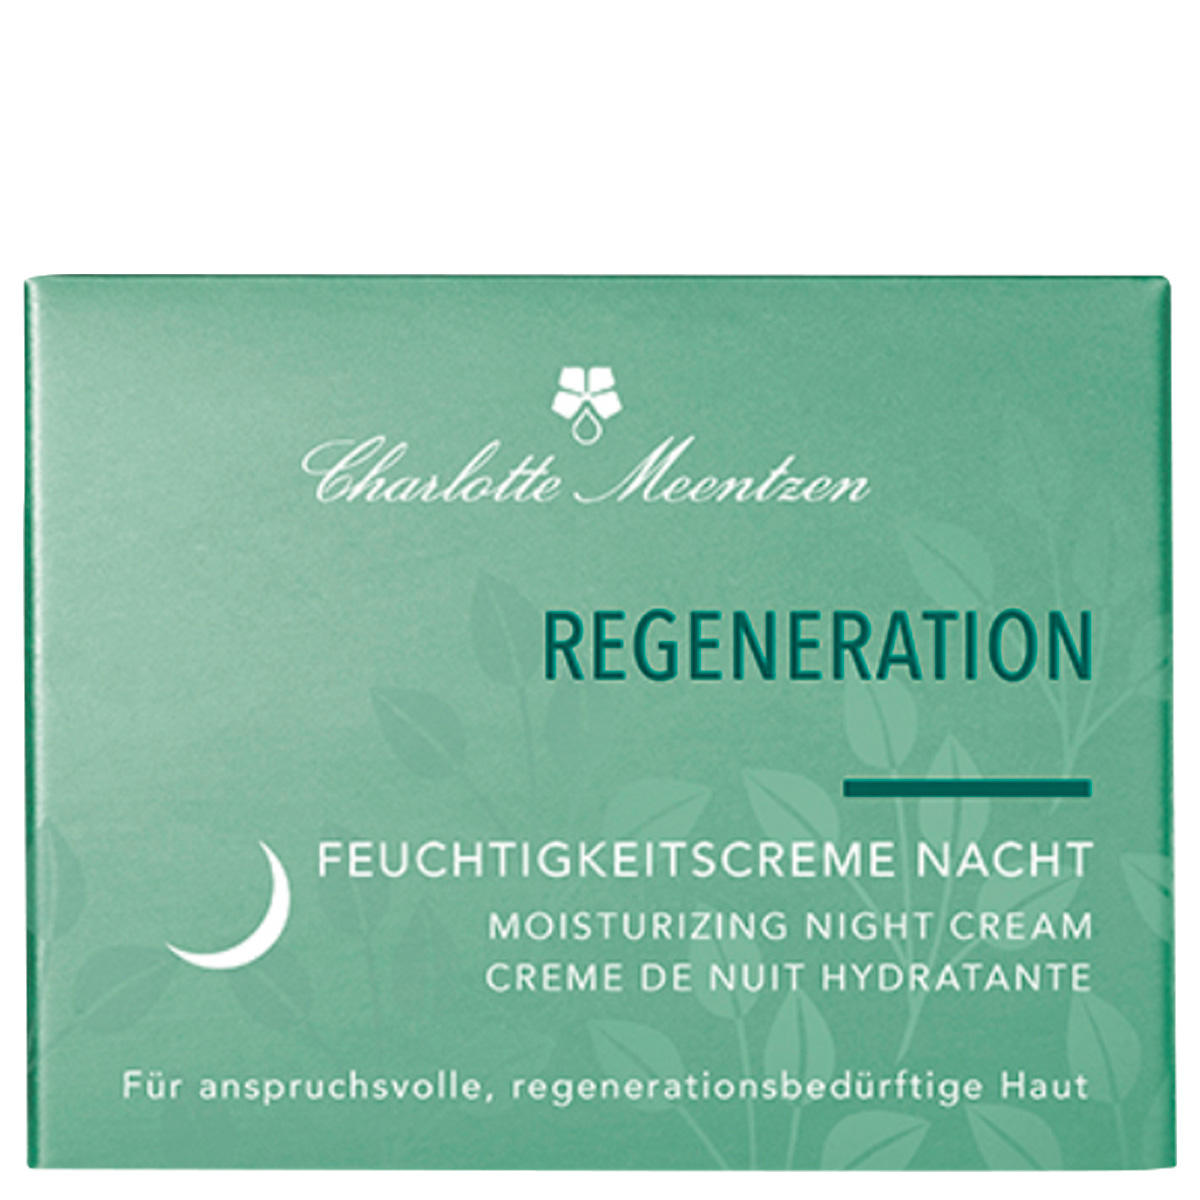 Charlotte Meentzen Regeneration Crème de nuit 50 ml - 2